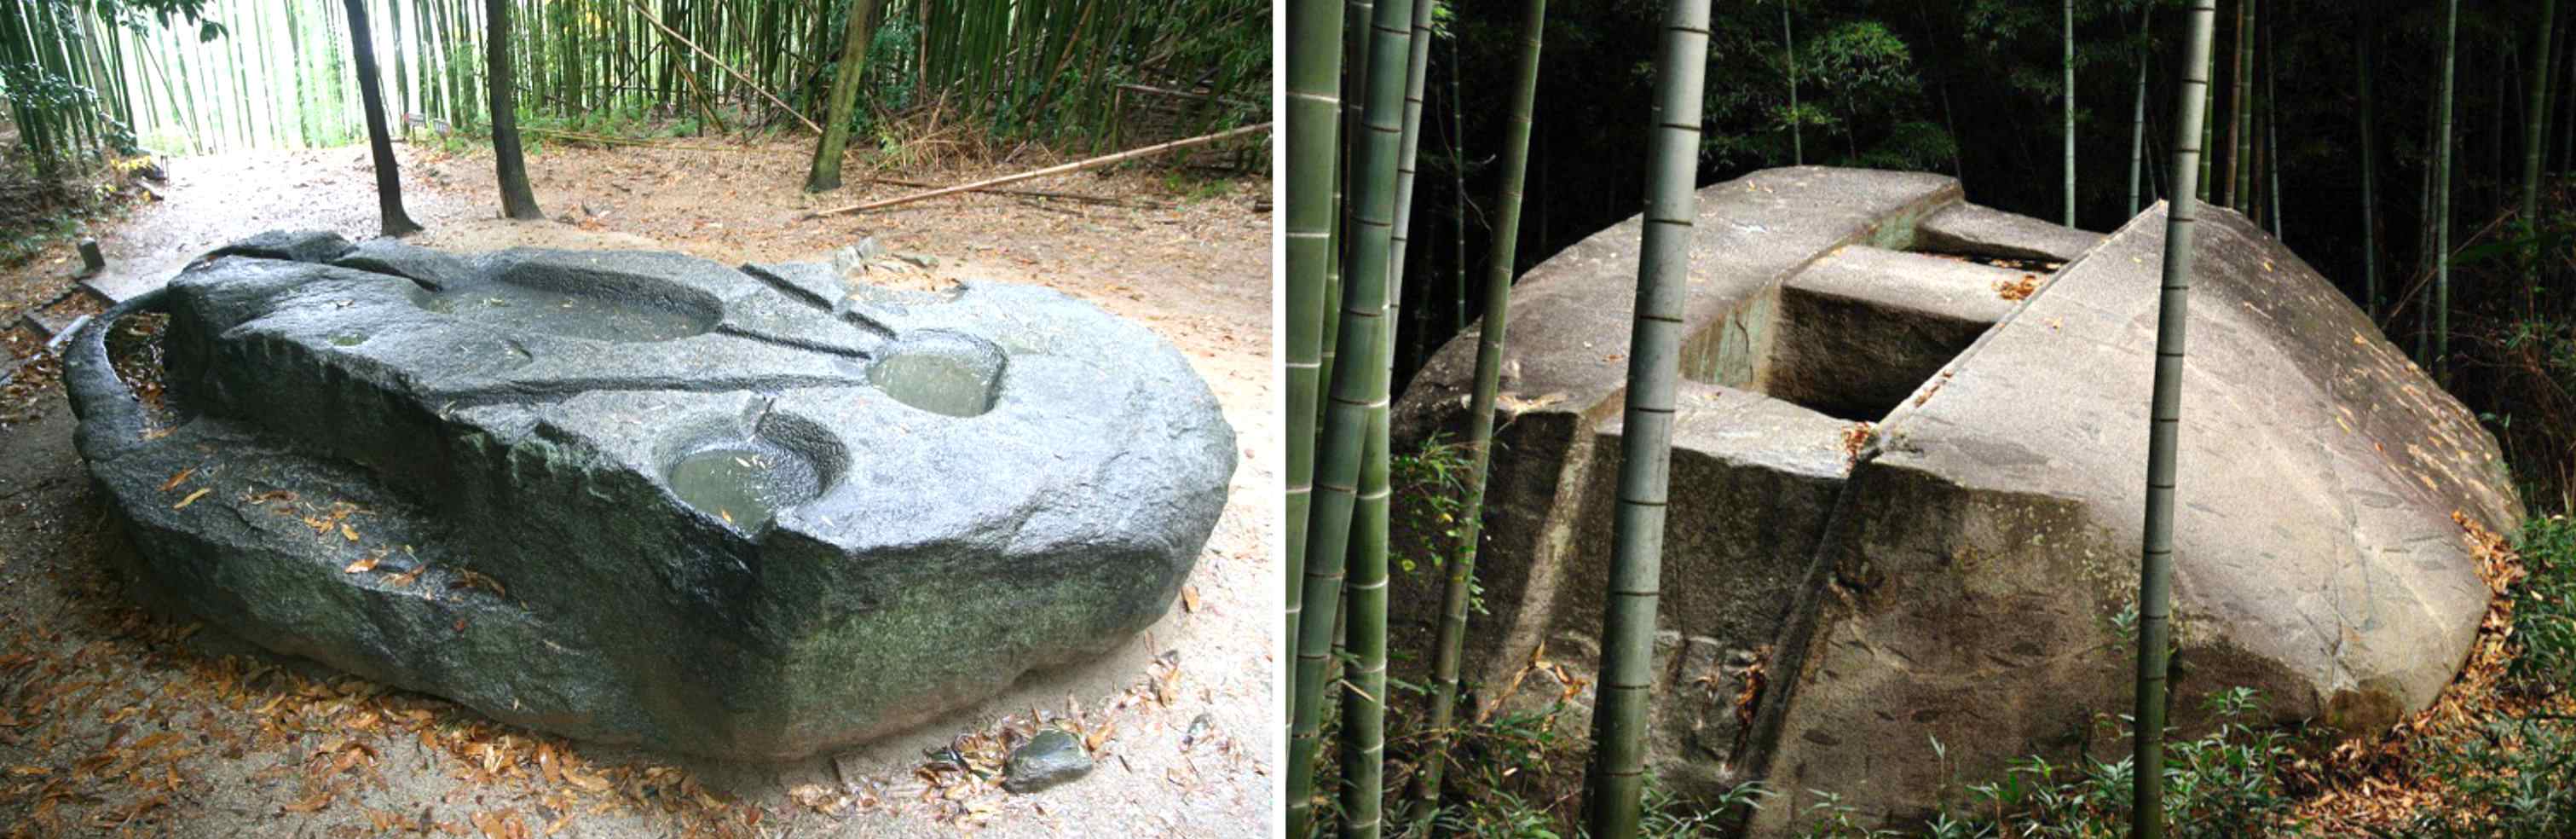 مکانیسم های باستانی: آیا غول ها این سنگ شکن ژاپنی را با وزن صدها تن ساخته اند؟ 3